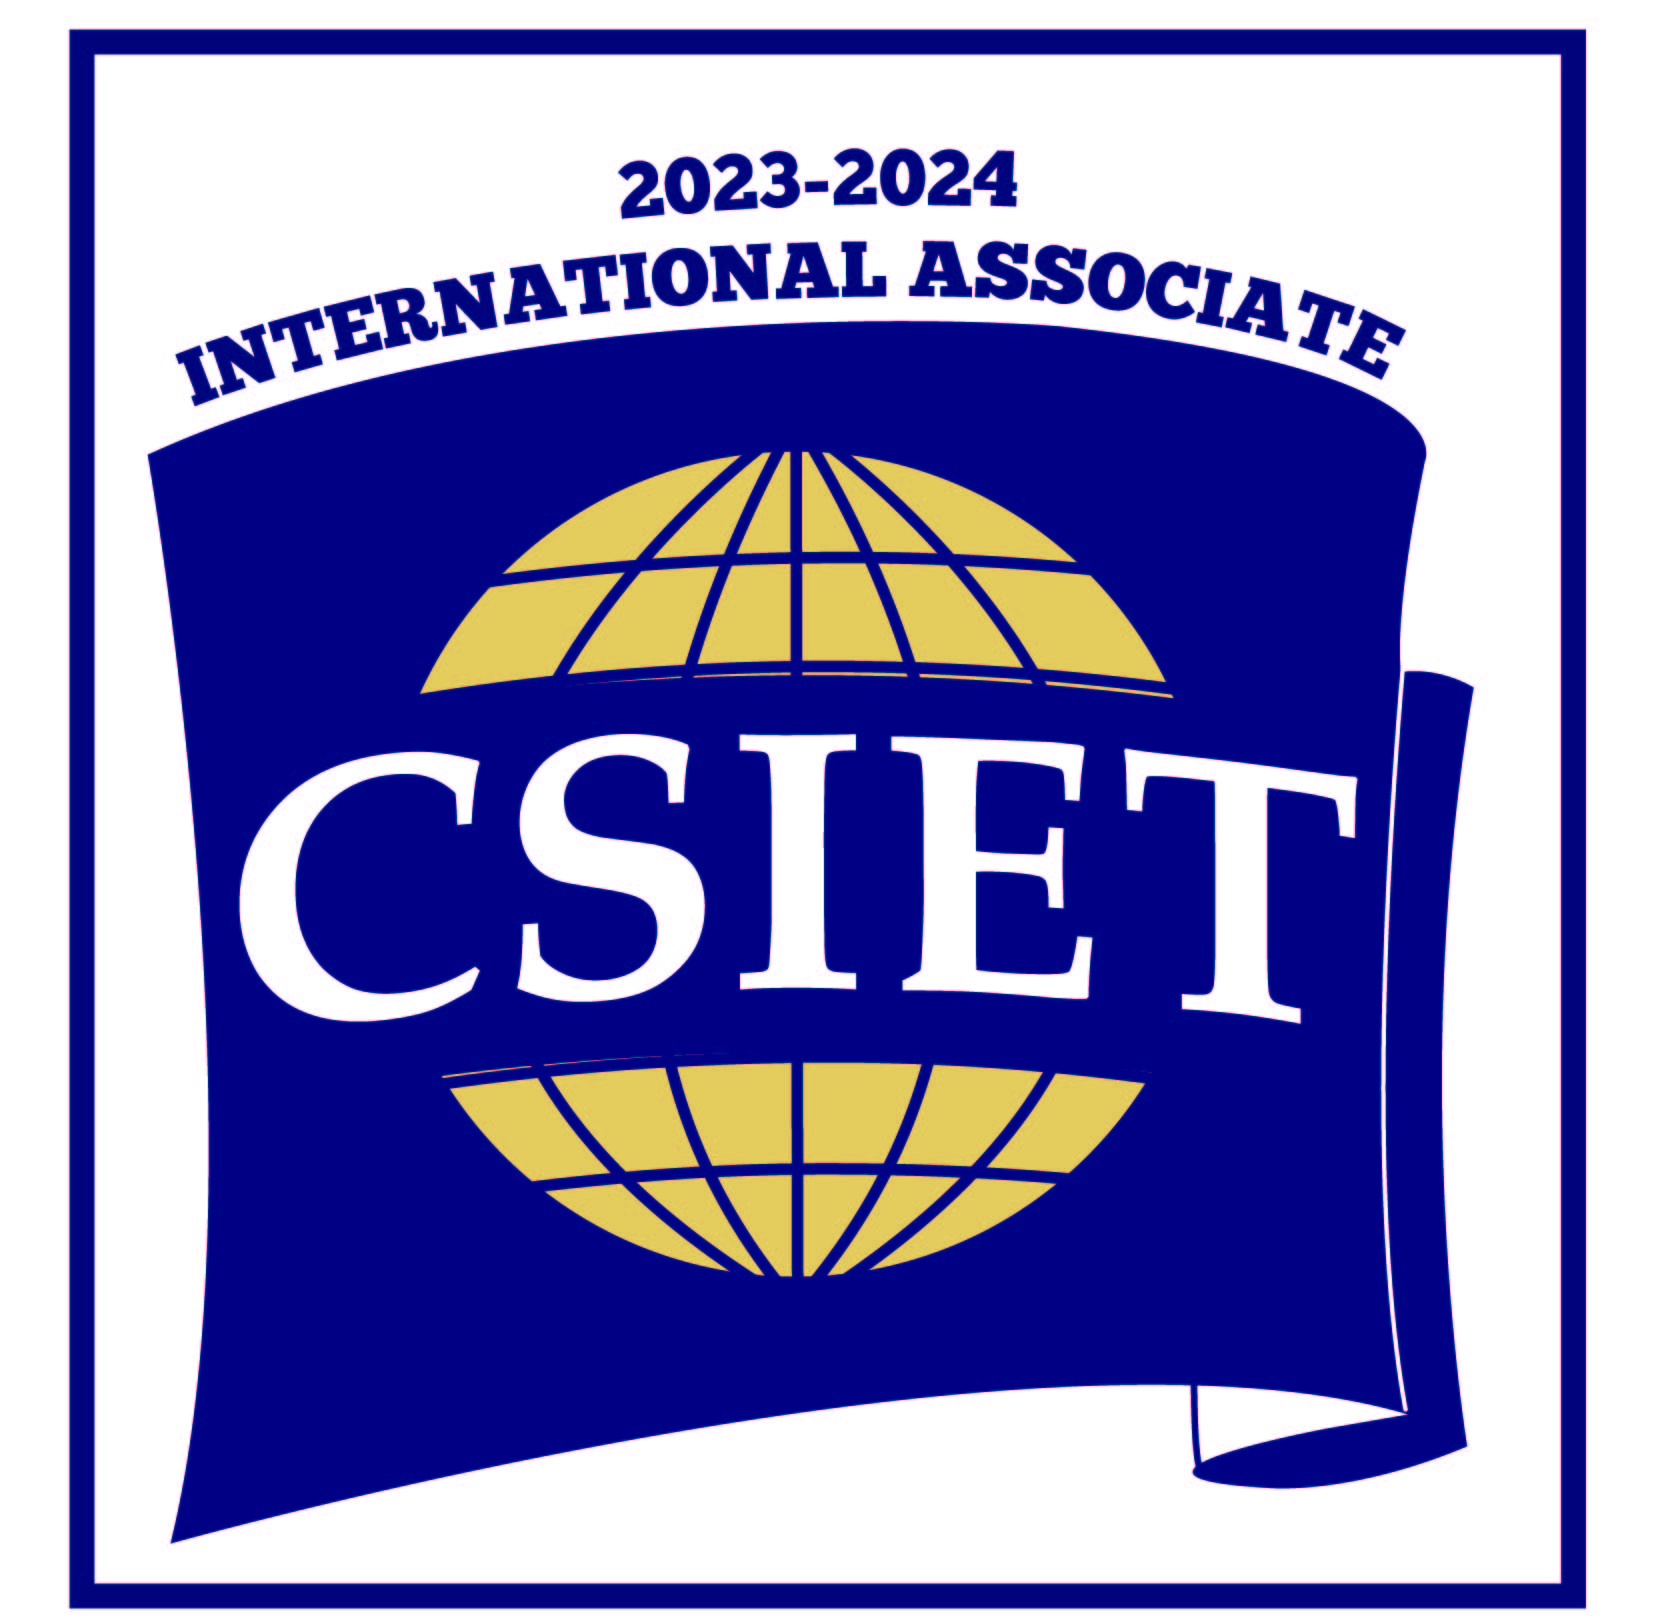 CSIET International Associate logo